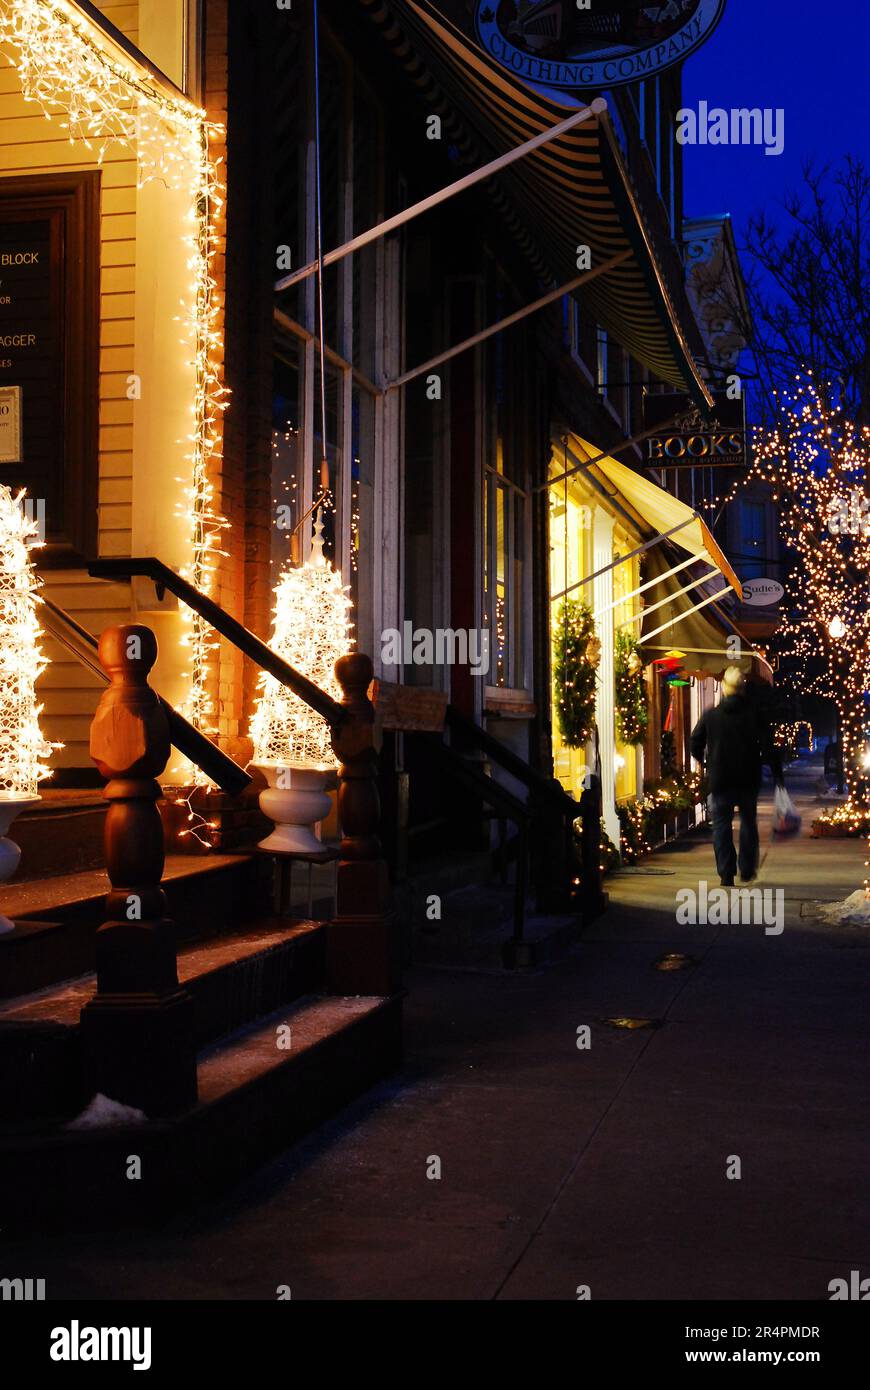 Les magasins et les entreprises du centre-ville de Woodstock, Vermont, sont éclairés la nuit pendant les fêtes de Noël Banque D'Images